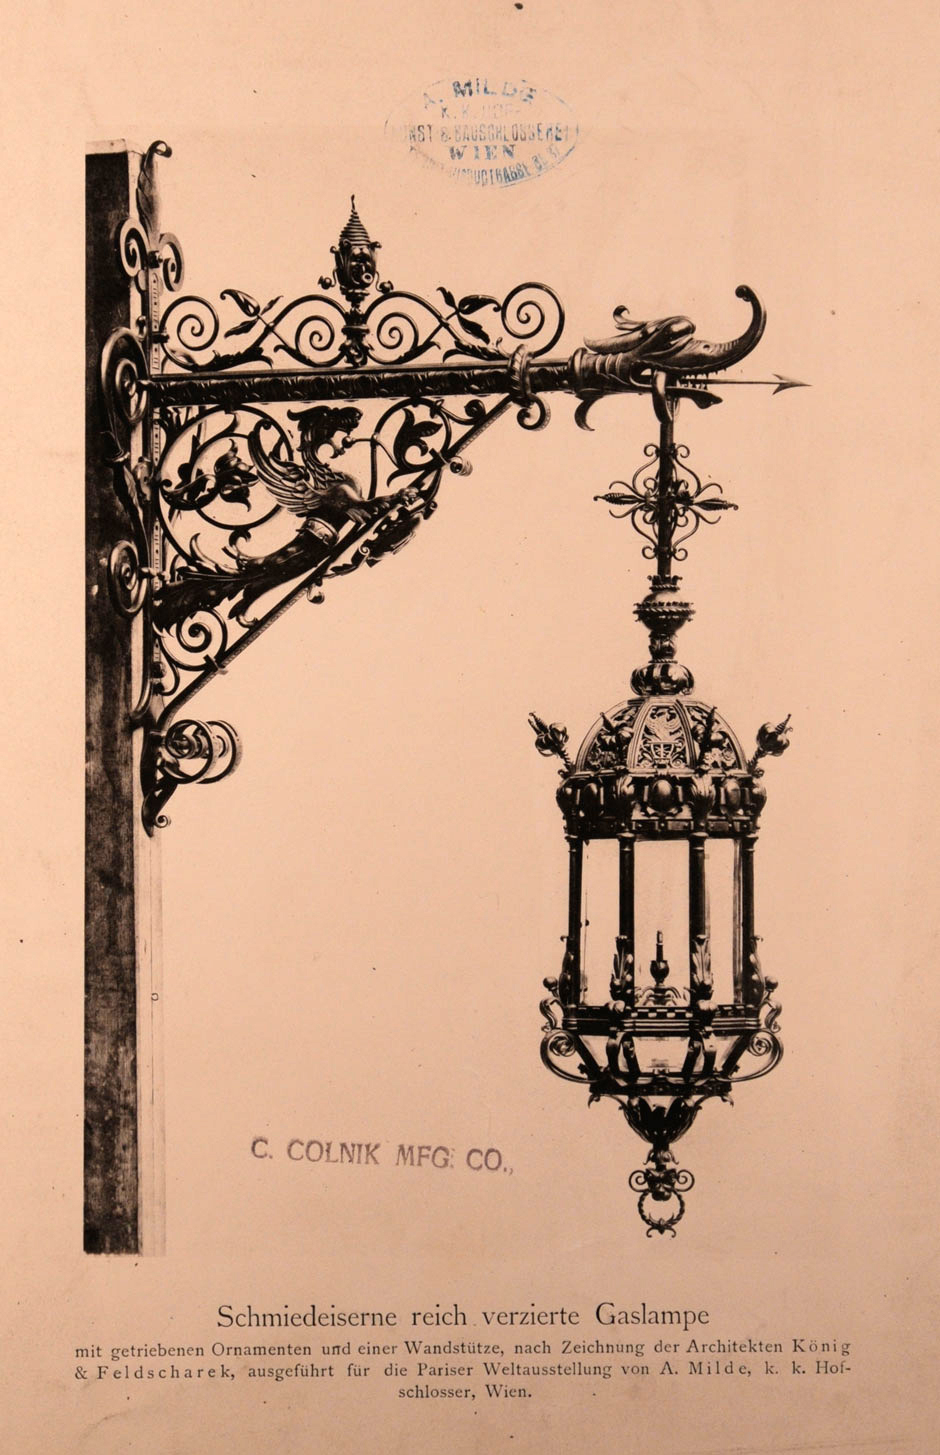 Schmiedeeiserne reichverzierte Gaslampe mit getriebenen Ornamenten und einer Wandstütze